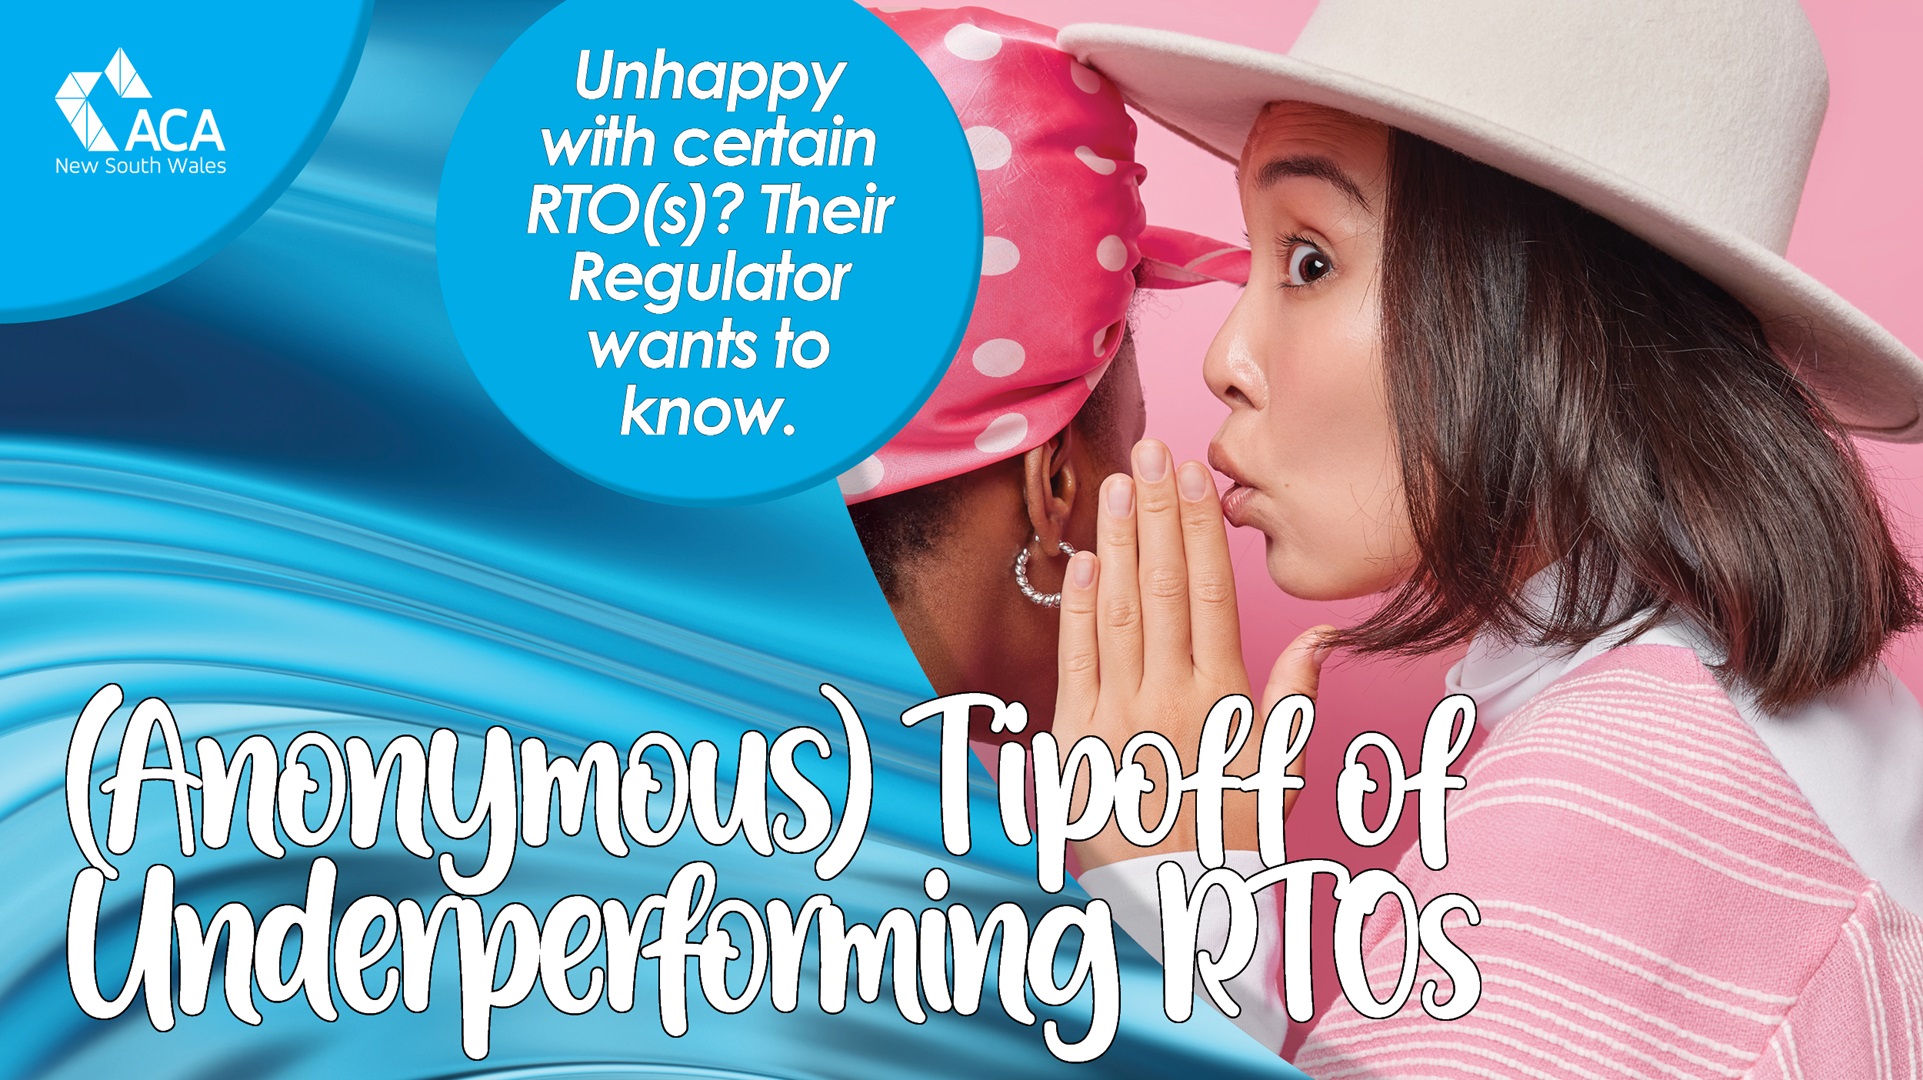 Tipoff underperforming RTOs